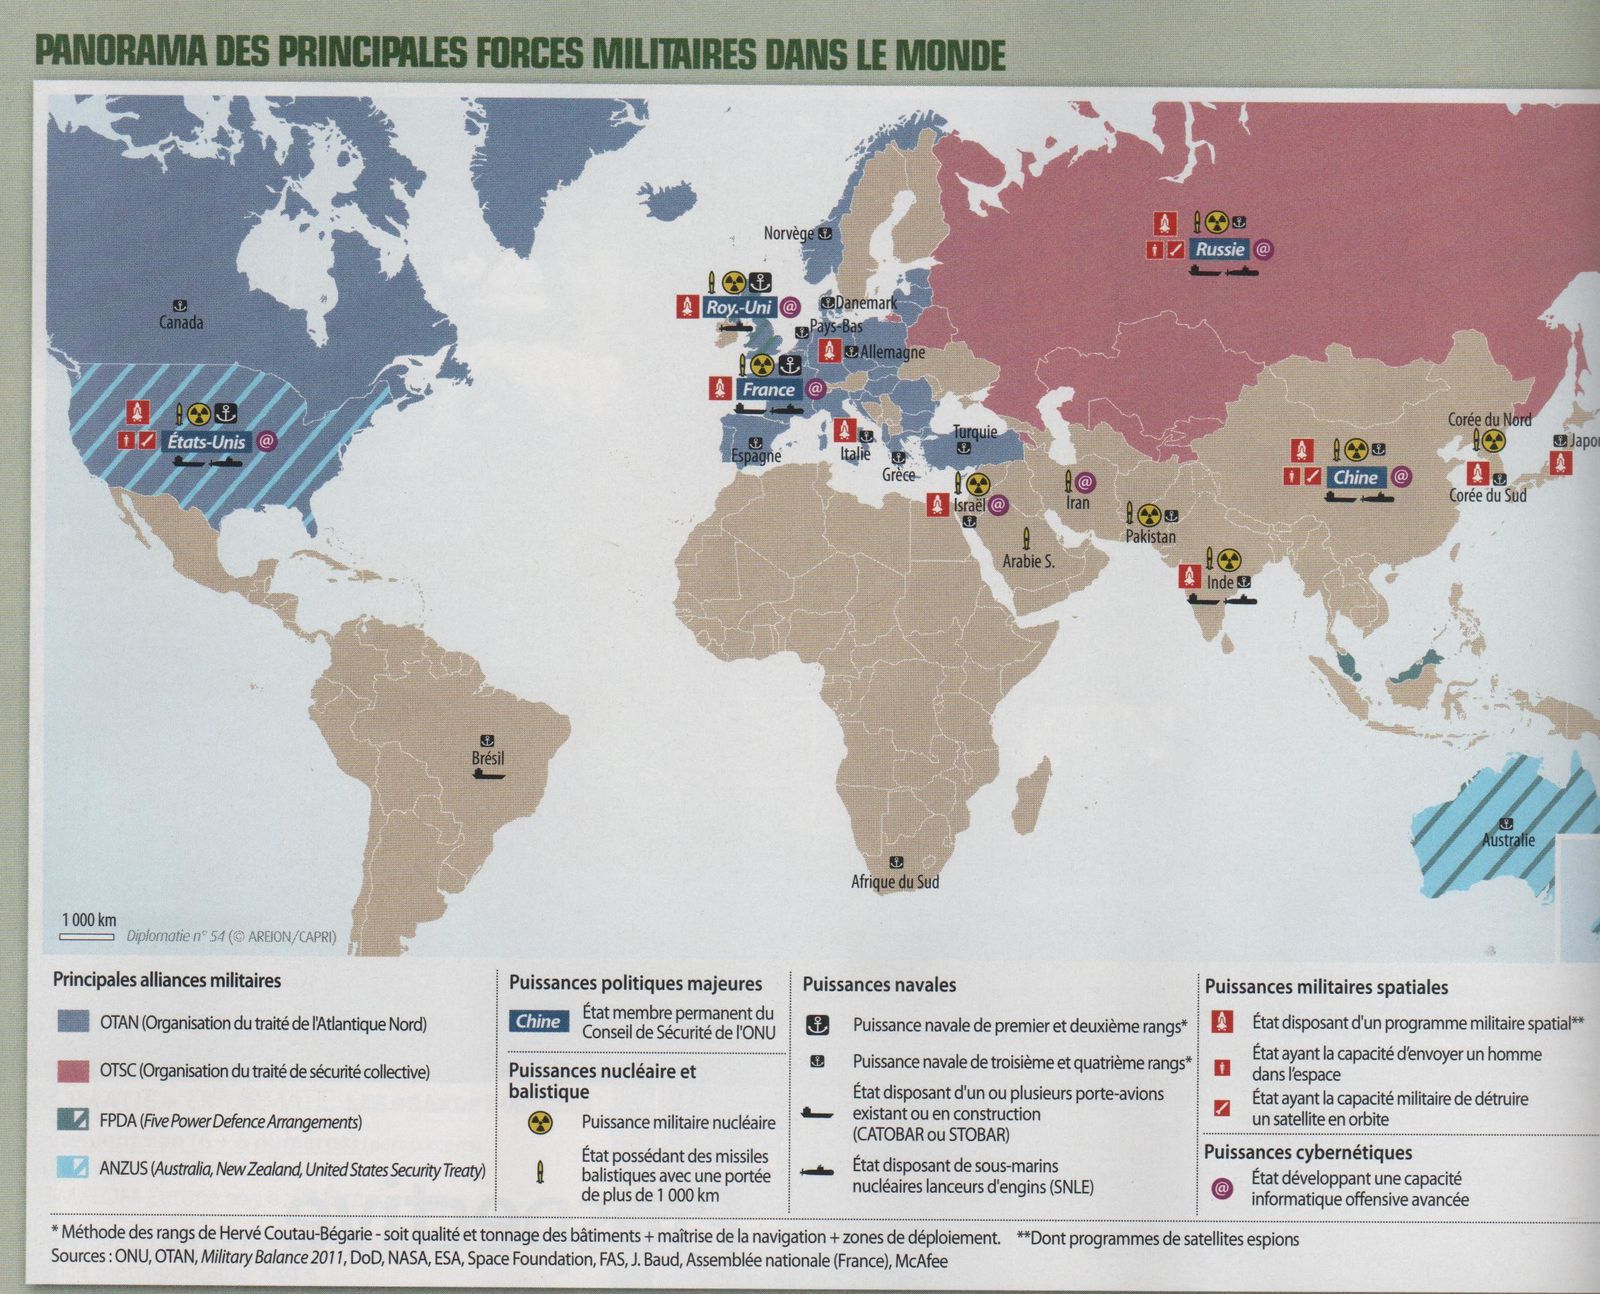 Forces militaires dans le monde 2011 - Diplomatie 54 - janv